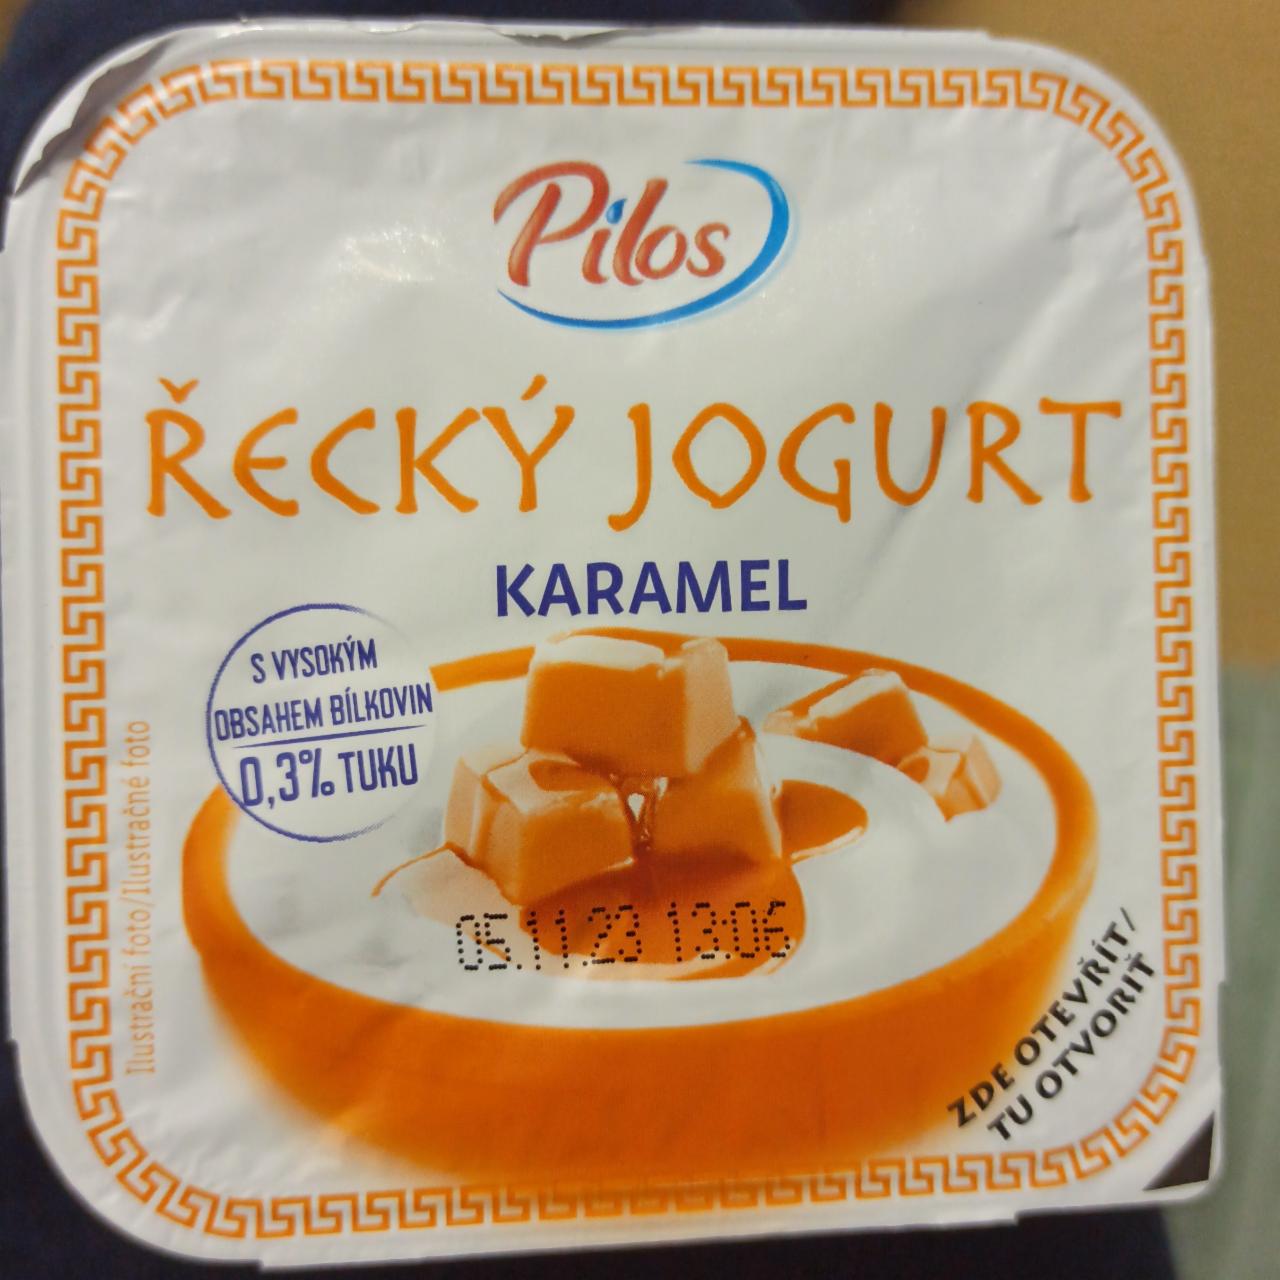 Фото - Греческий йогурт Карамель 0.3% Pilos